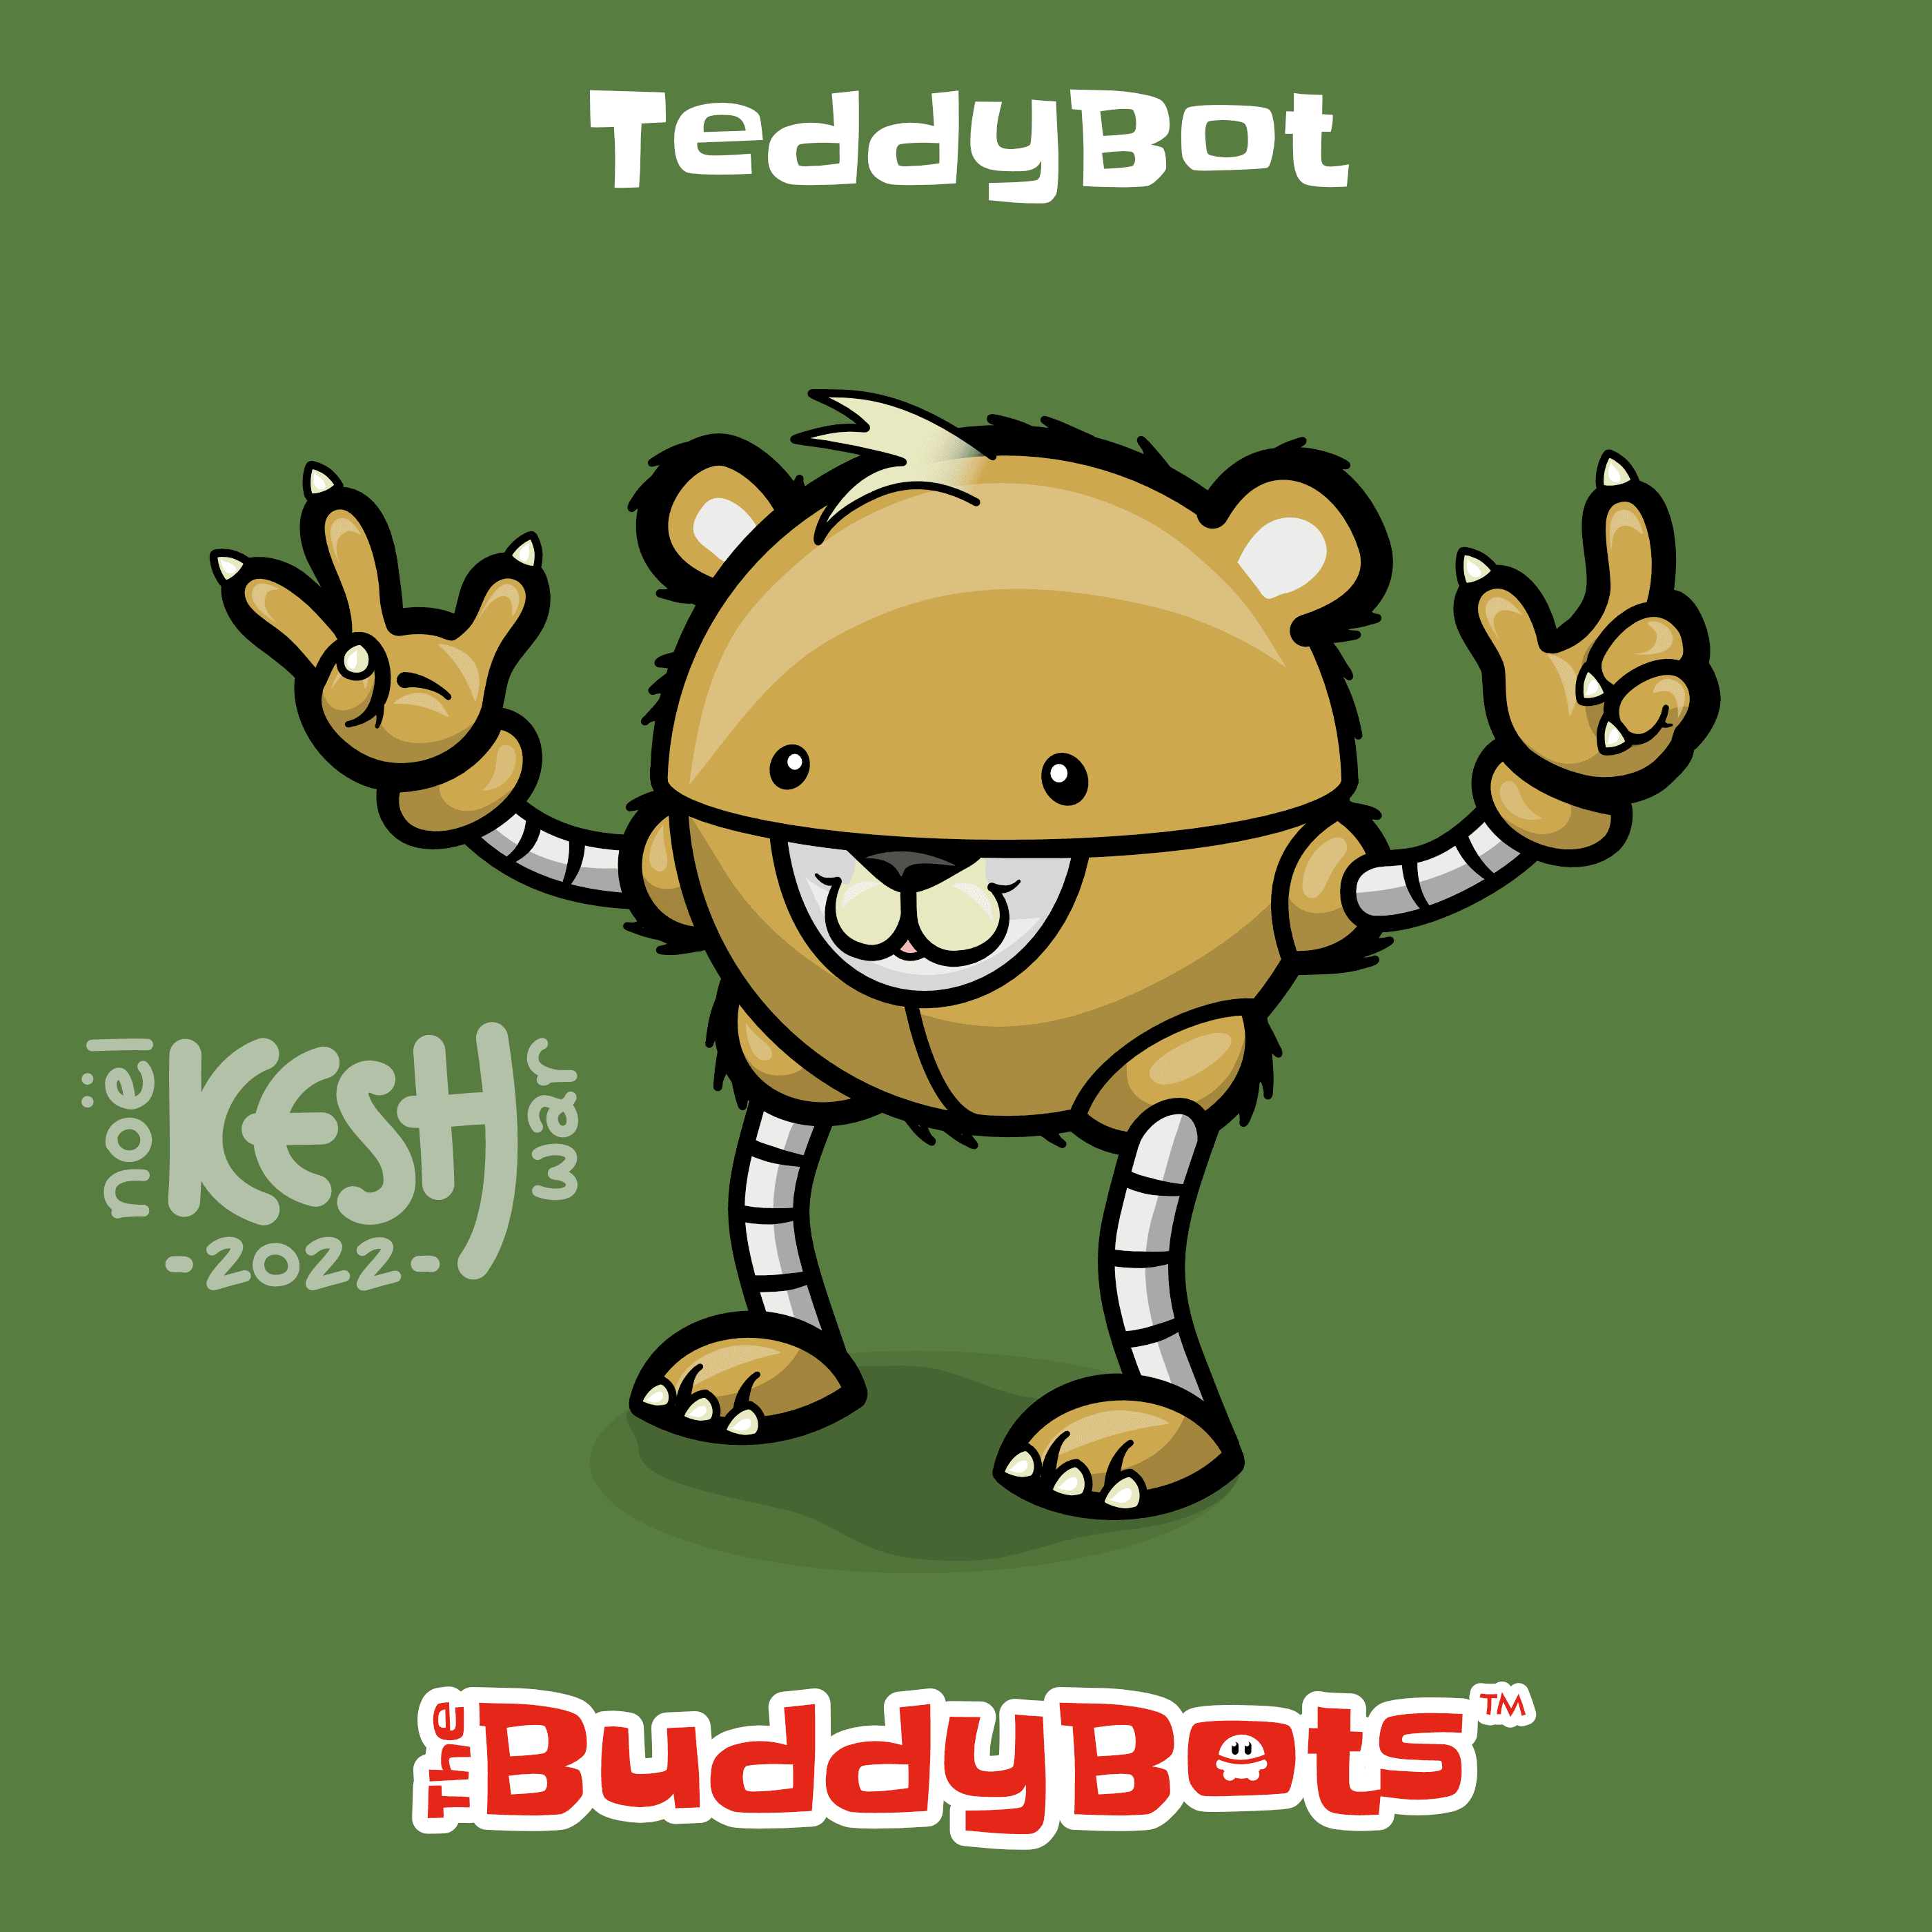 TeddyBot (Extended)